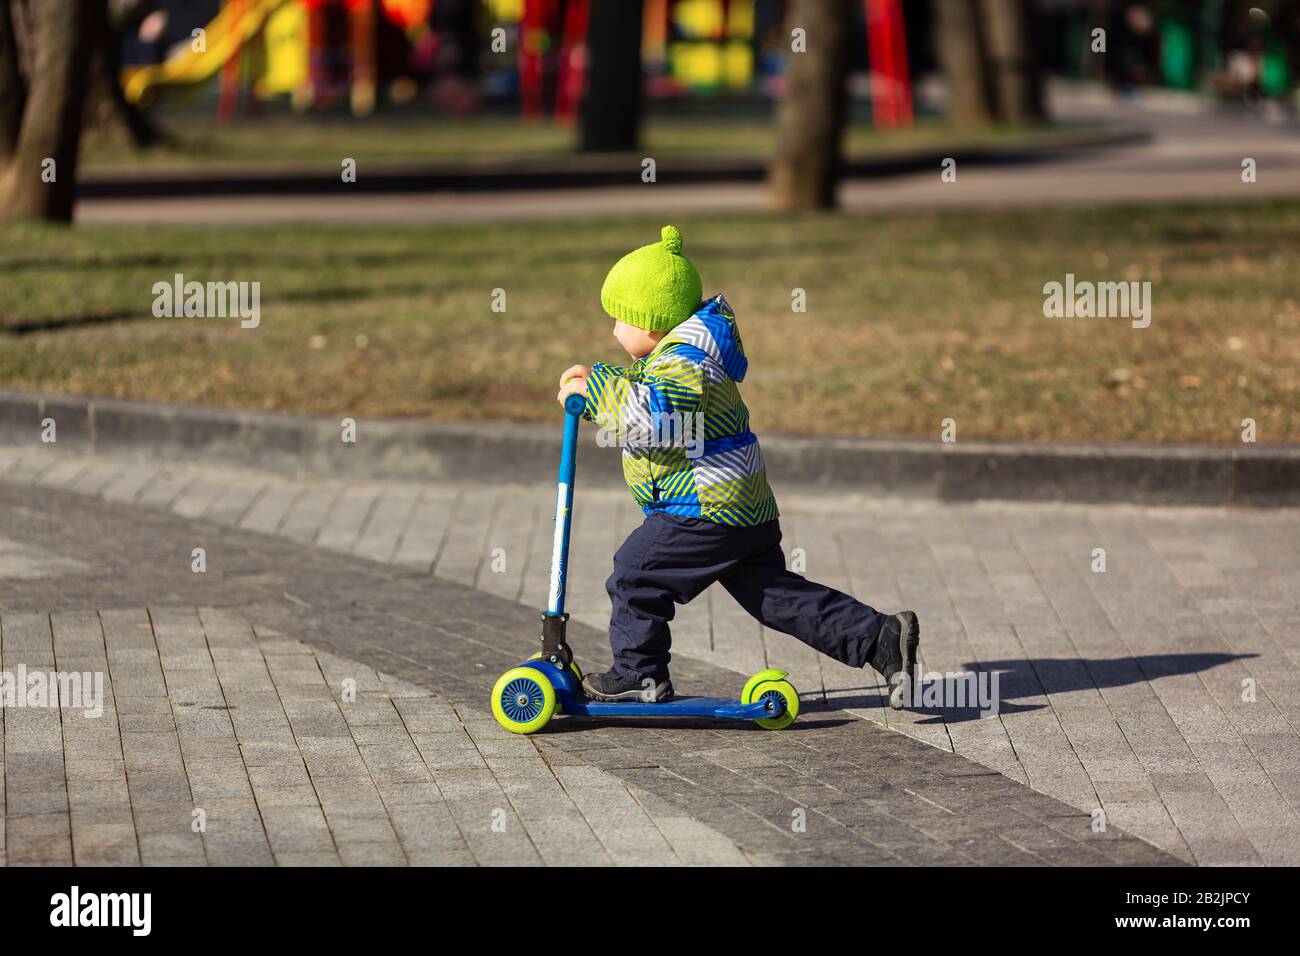 Joli petit garçon qui monte un scooter de coup. Activité extérieure saine Banque D'Images